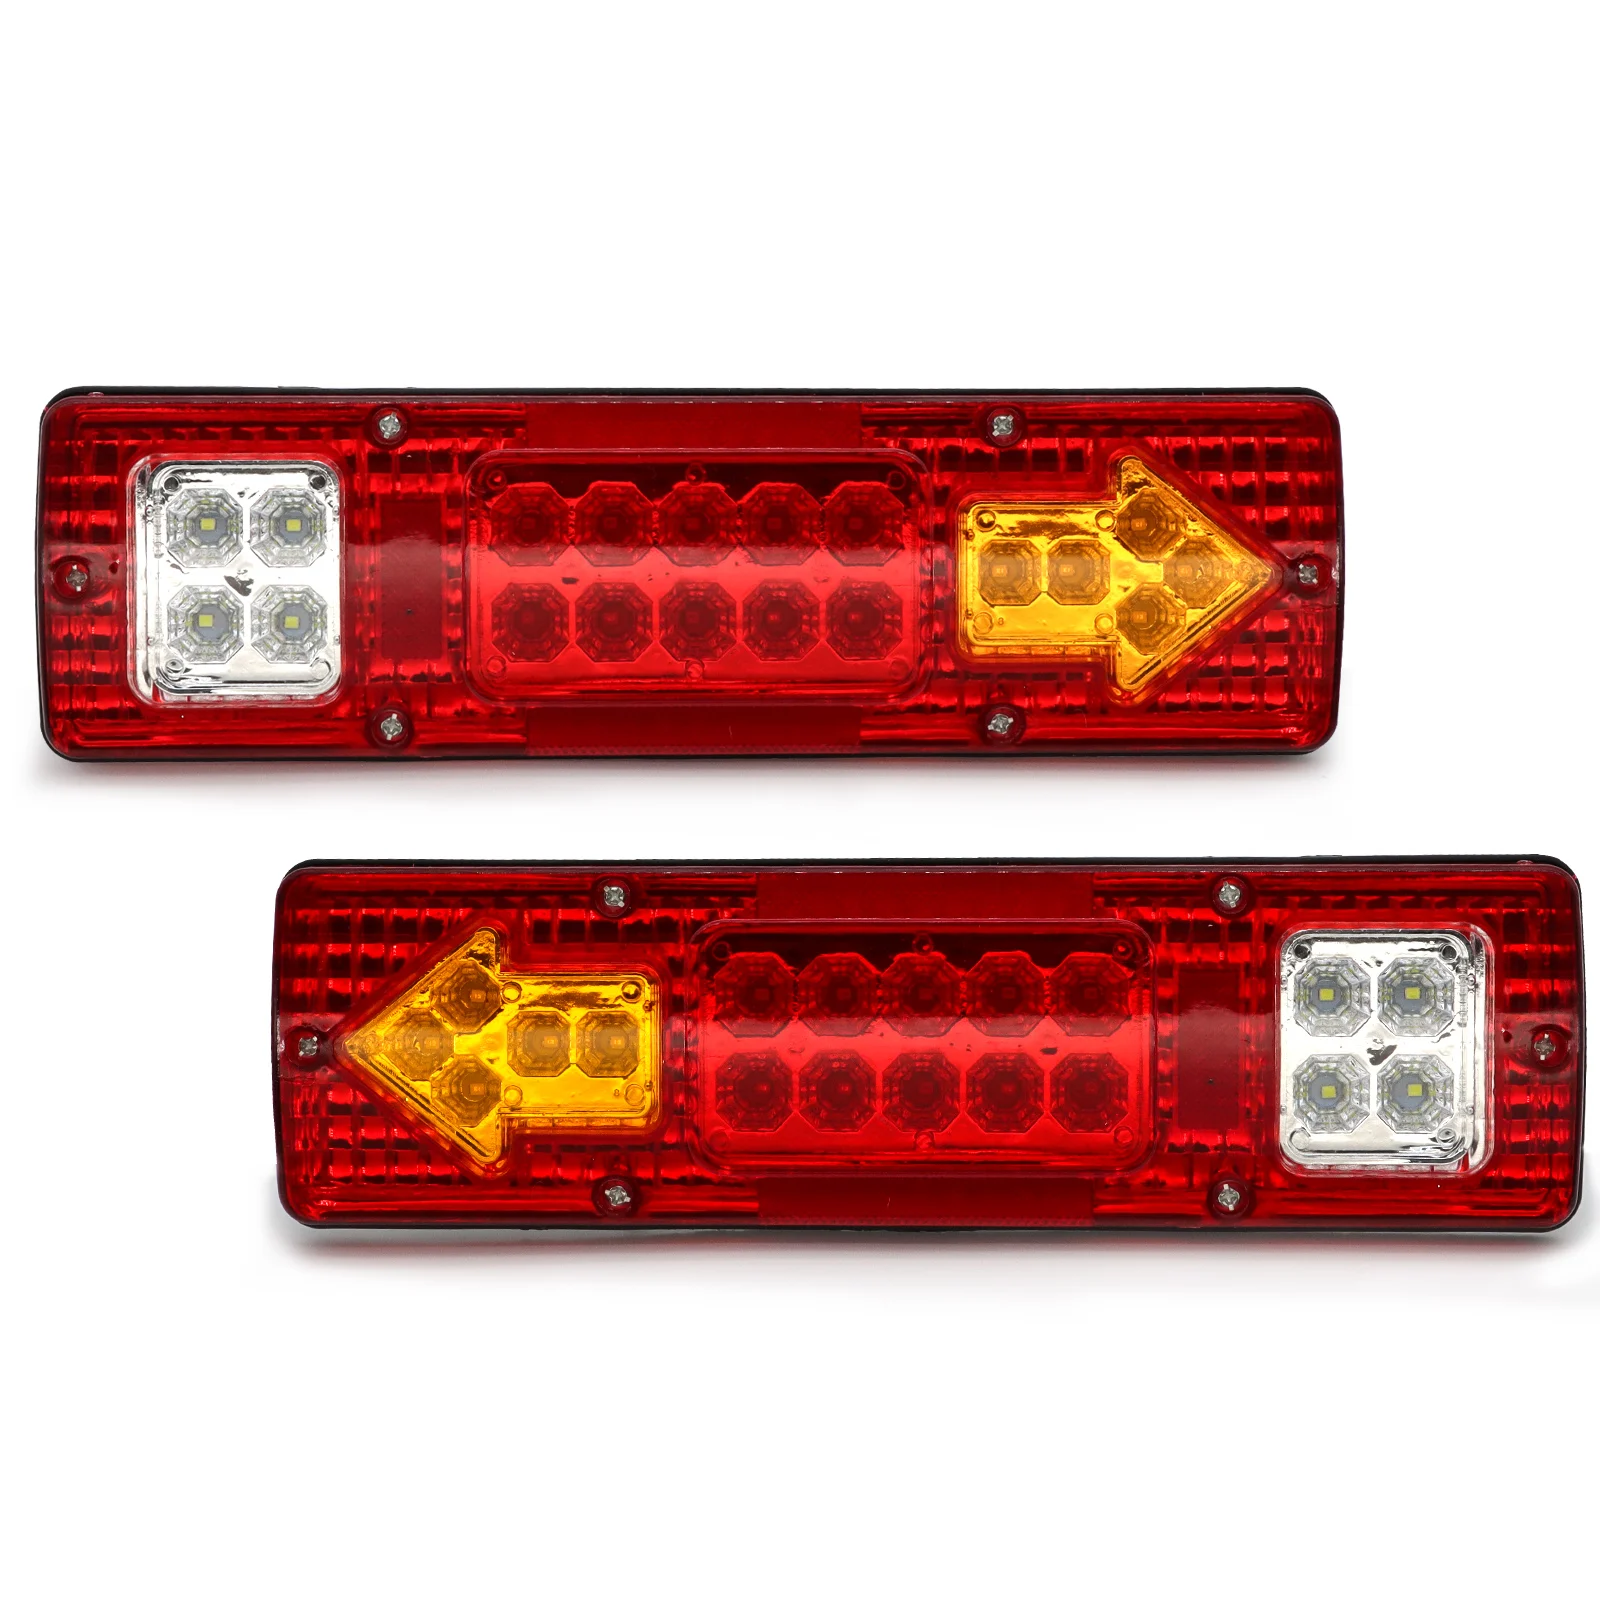 2x 46 LED Truck Tail Light Bar for Truck Boat Trailer Pickup RV Camper UTV UTE Vans Turn Signal Brake Reverse Running Taillight